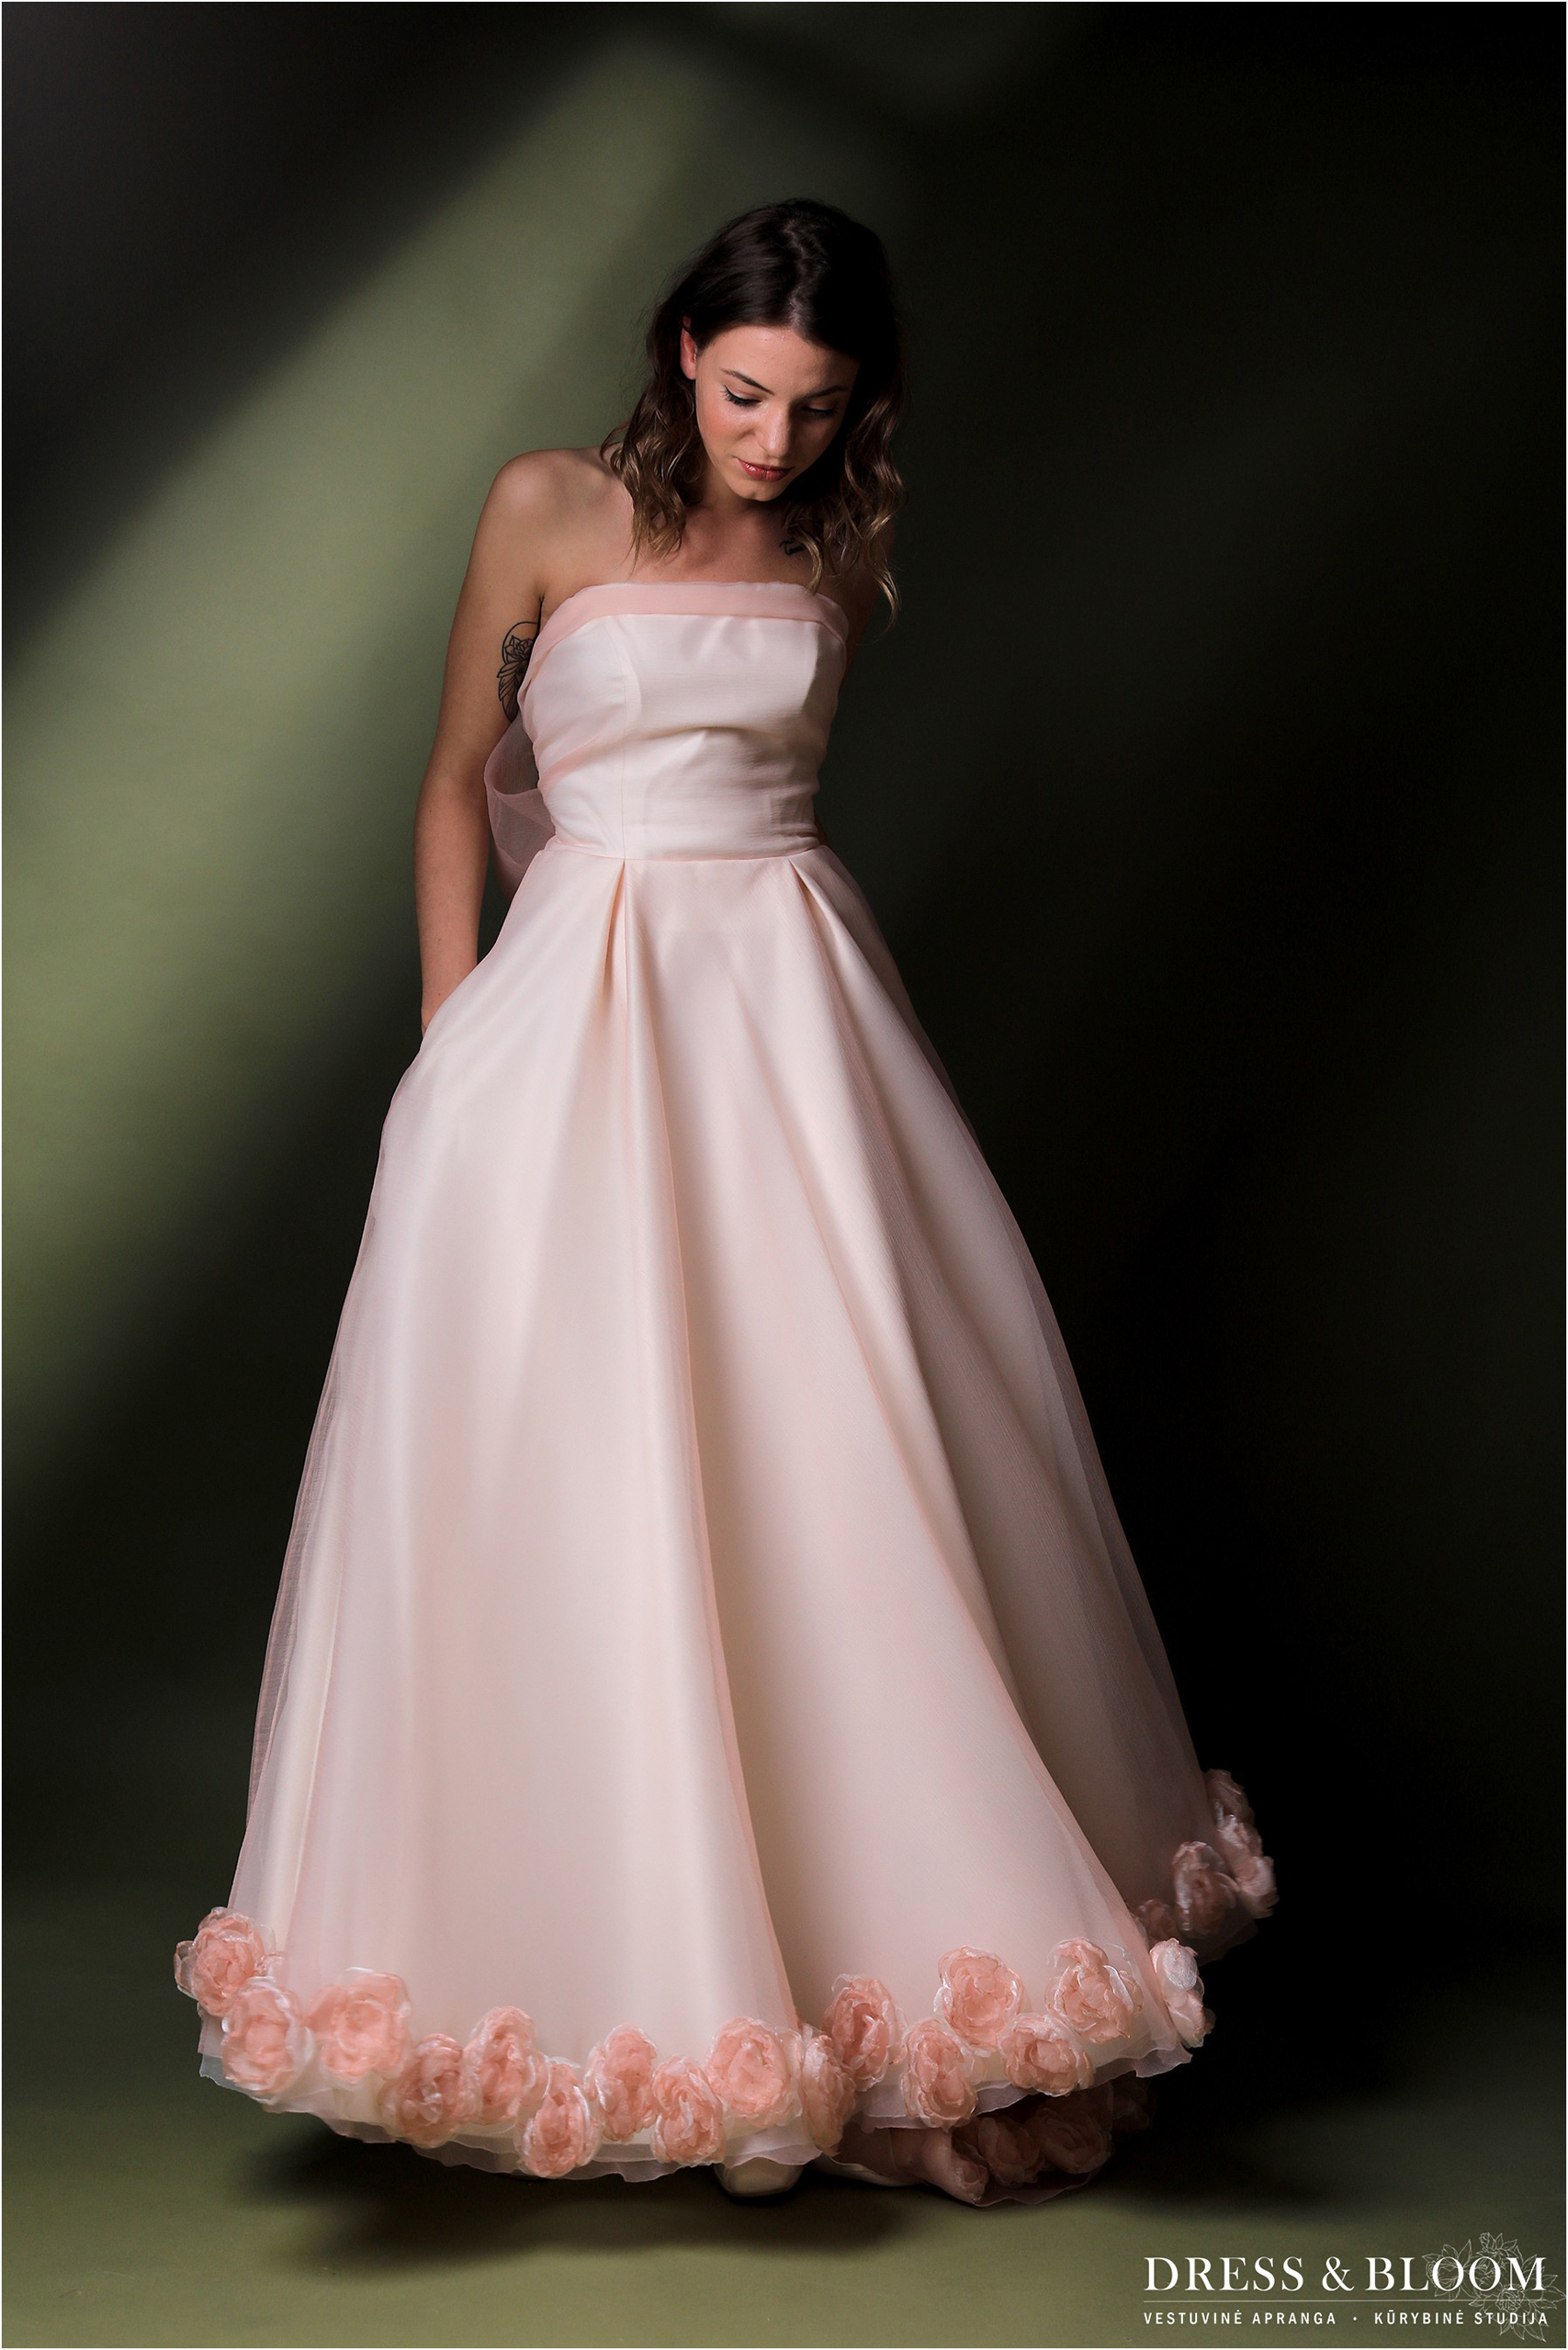 Dress & Bloom kurybinė studija - peach blooms dress